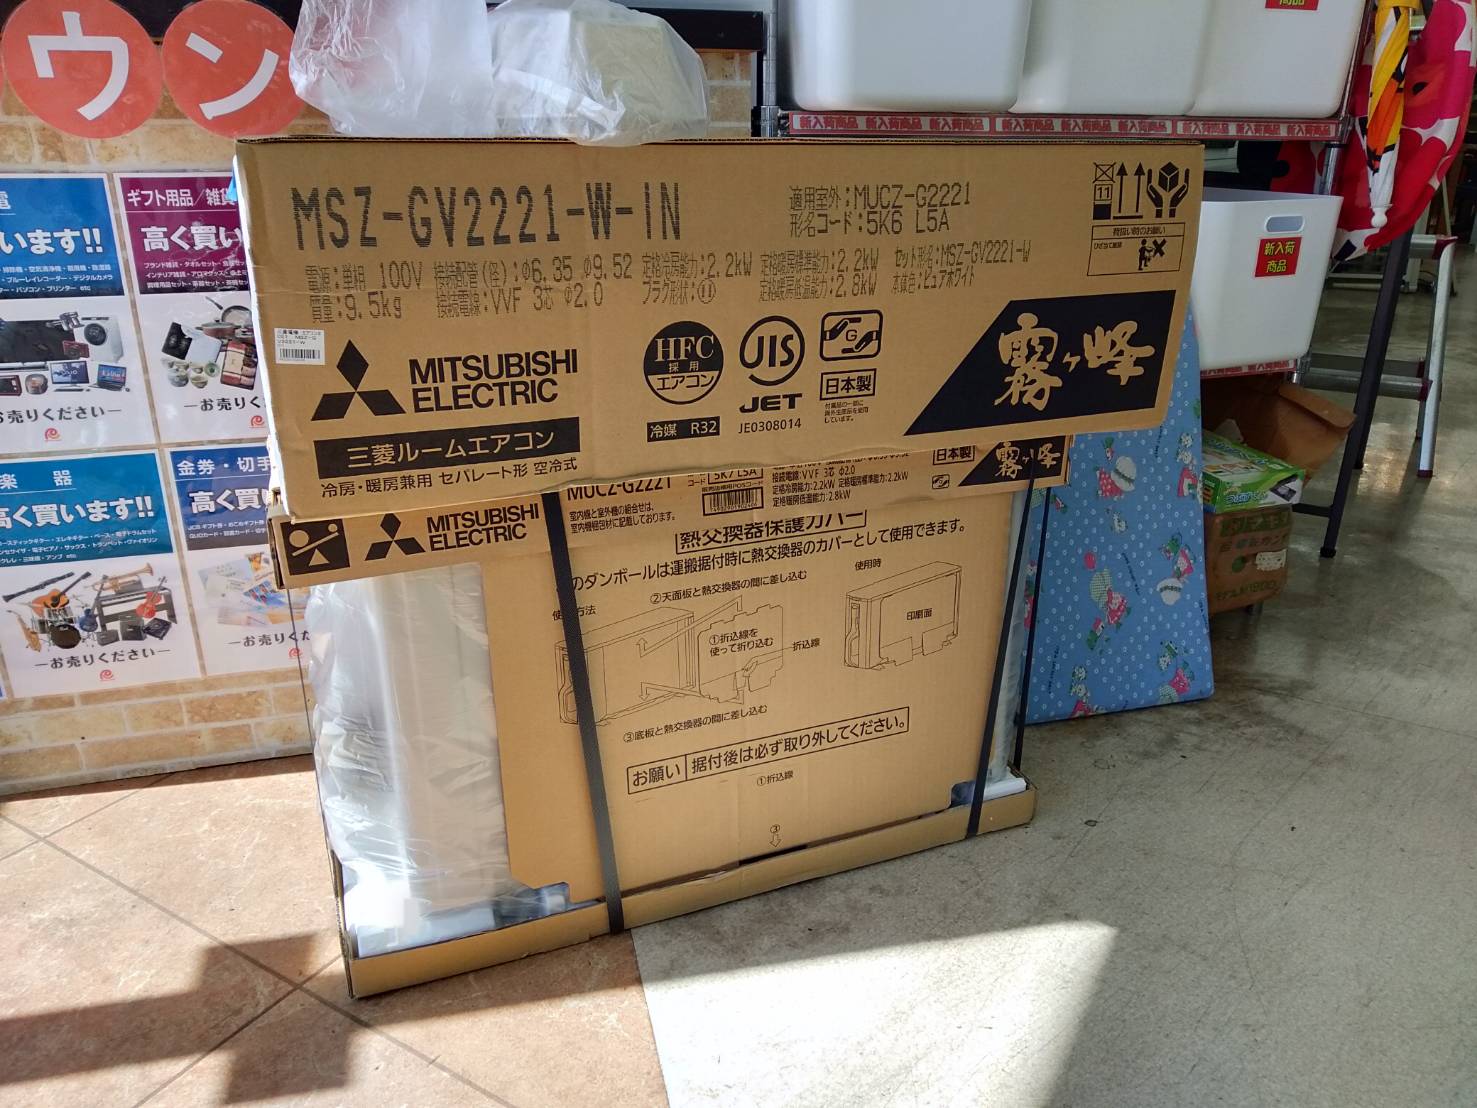 【未開封】2021年式 MITSUBISHI 三菱 2.2kw ルームエアコン MSZ-GV2221-W